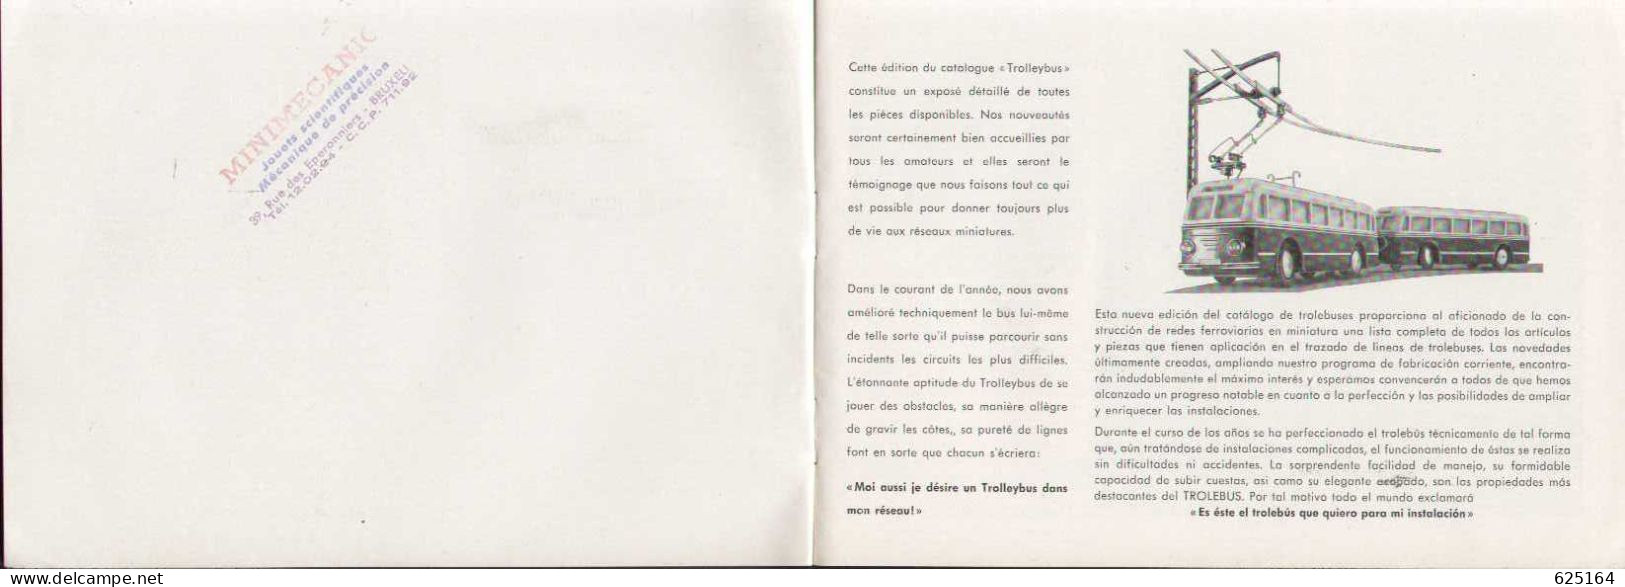 Catalogue EHEIM TROLLEY-BUS 1954  HO 1:87 - Französische Ausgabe - French